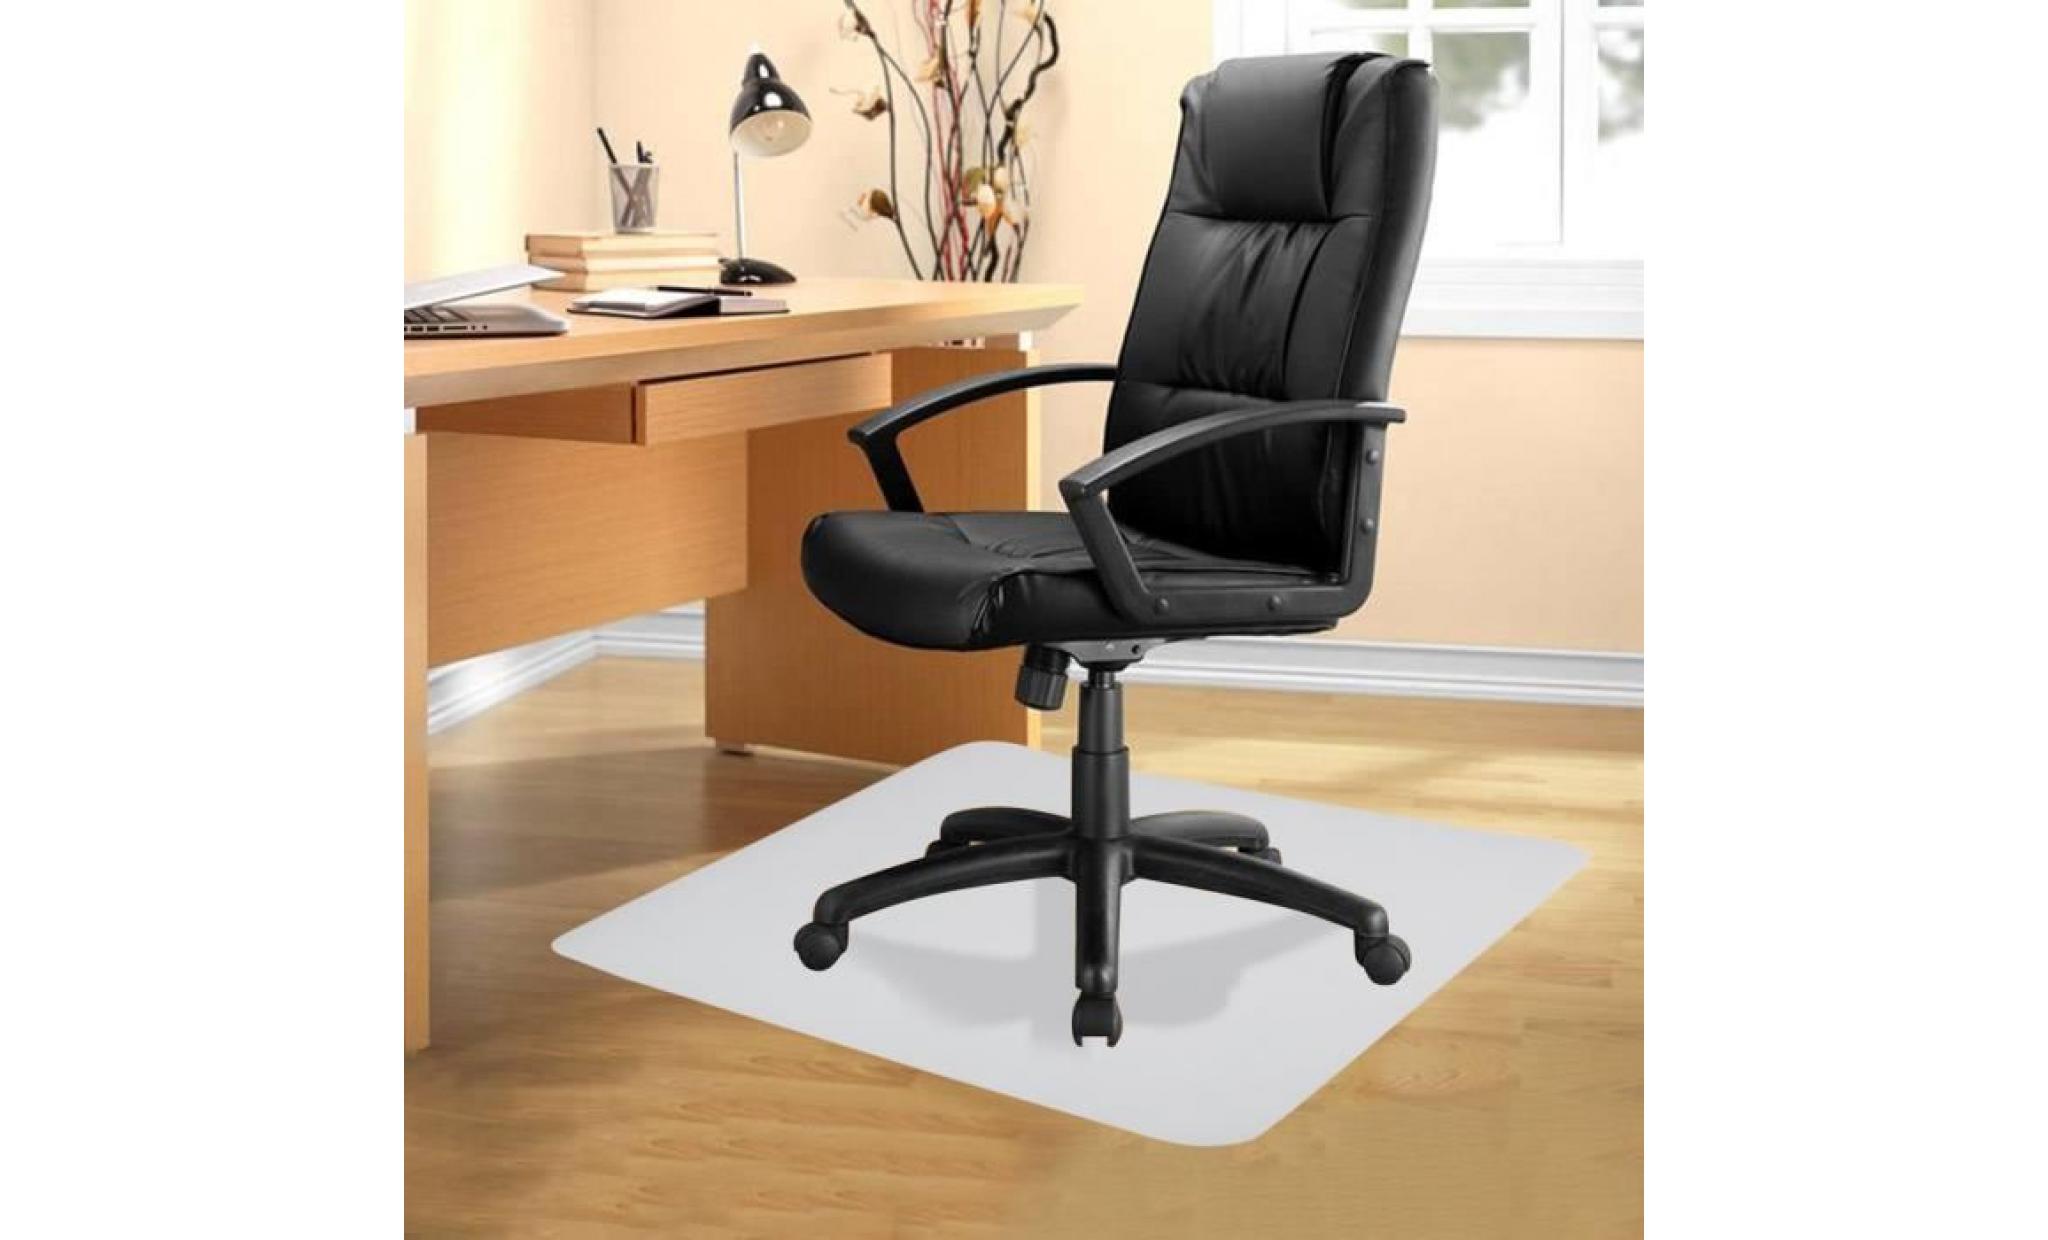 tapis protecteur de plancher durable anti dérapant tapis pour chaise coussin 120*120cm